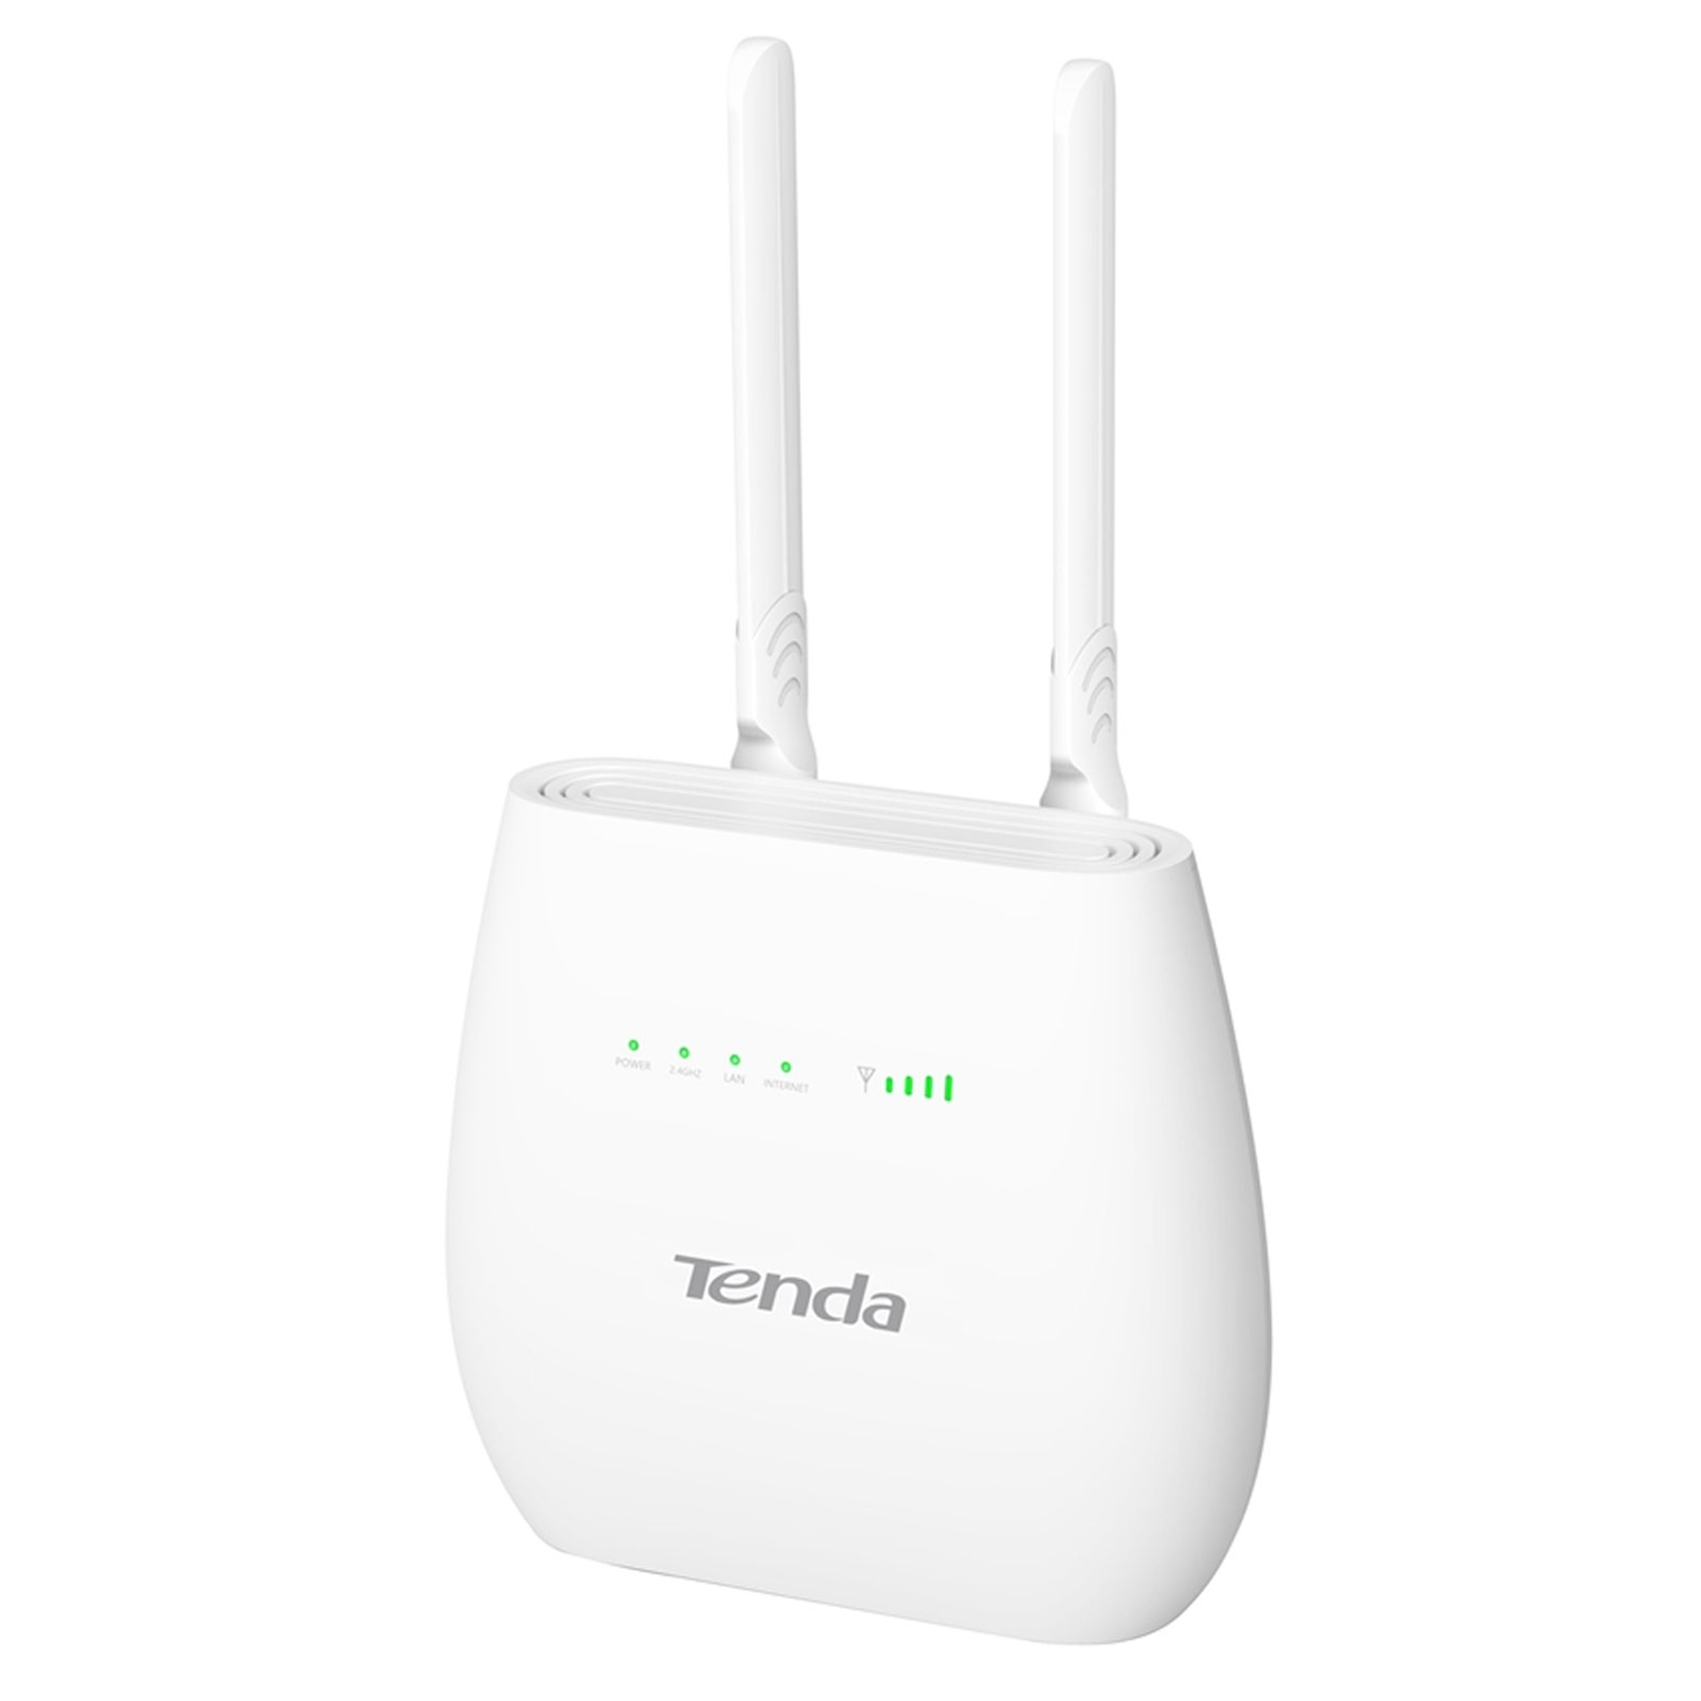 Tenda 4g03. Wi-Fi роутер Tenda 4g680. Роутер Tenda 4g06. Tenda 4g03 Wi-Fi роутер (маршрутизатор) n300 4g LTE SIM. 4g/Wi-Fi роутер Tenda 4g680 v2.